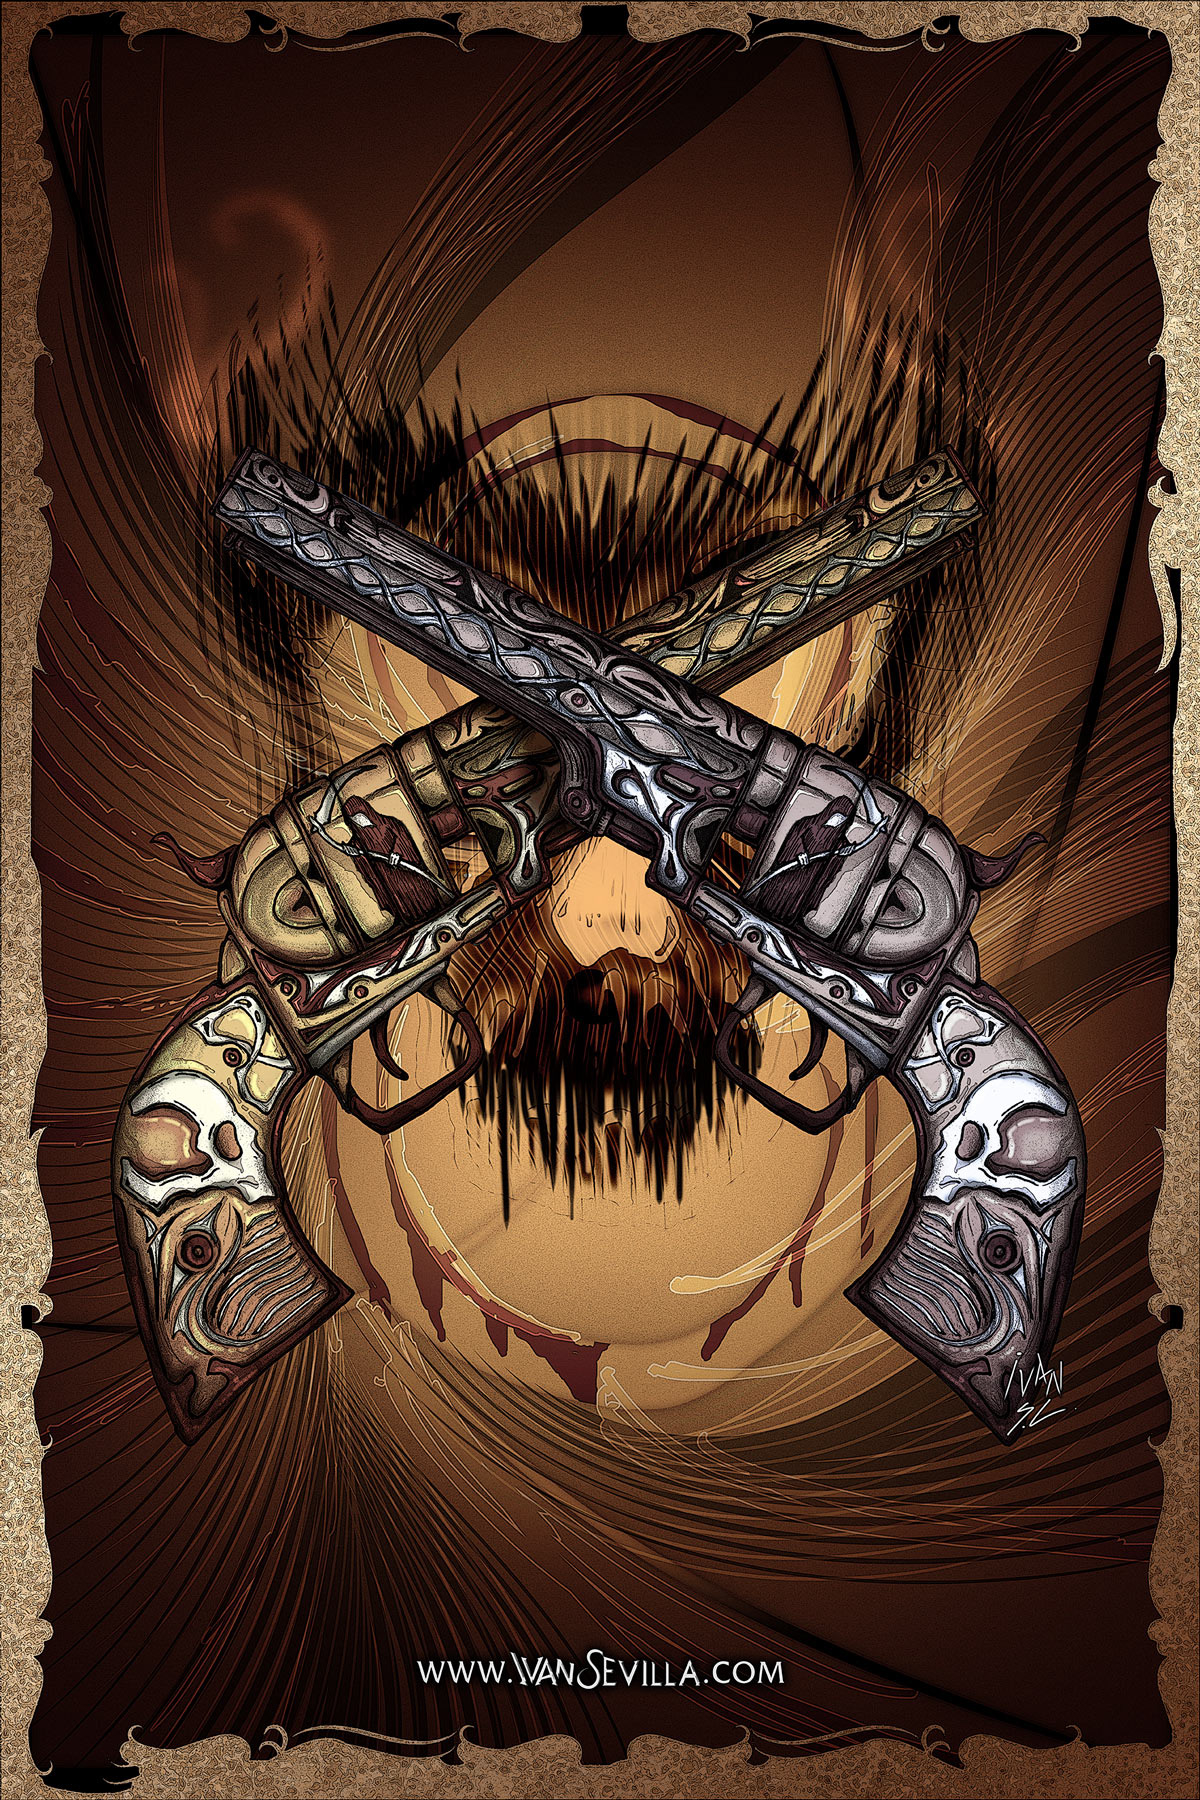 art digitalilustration grimreaper Gun ilustration poster Revolver skull